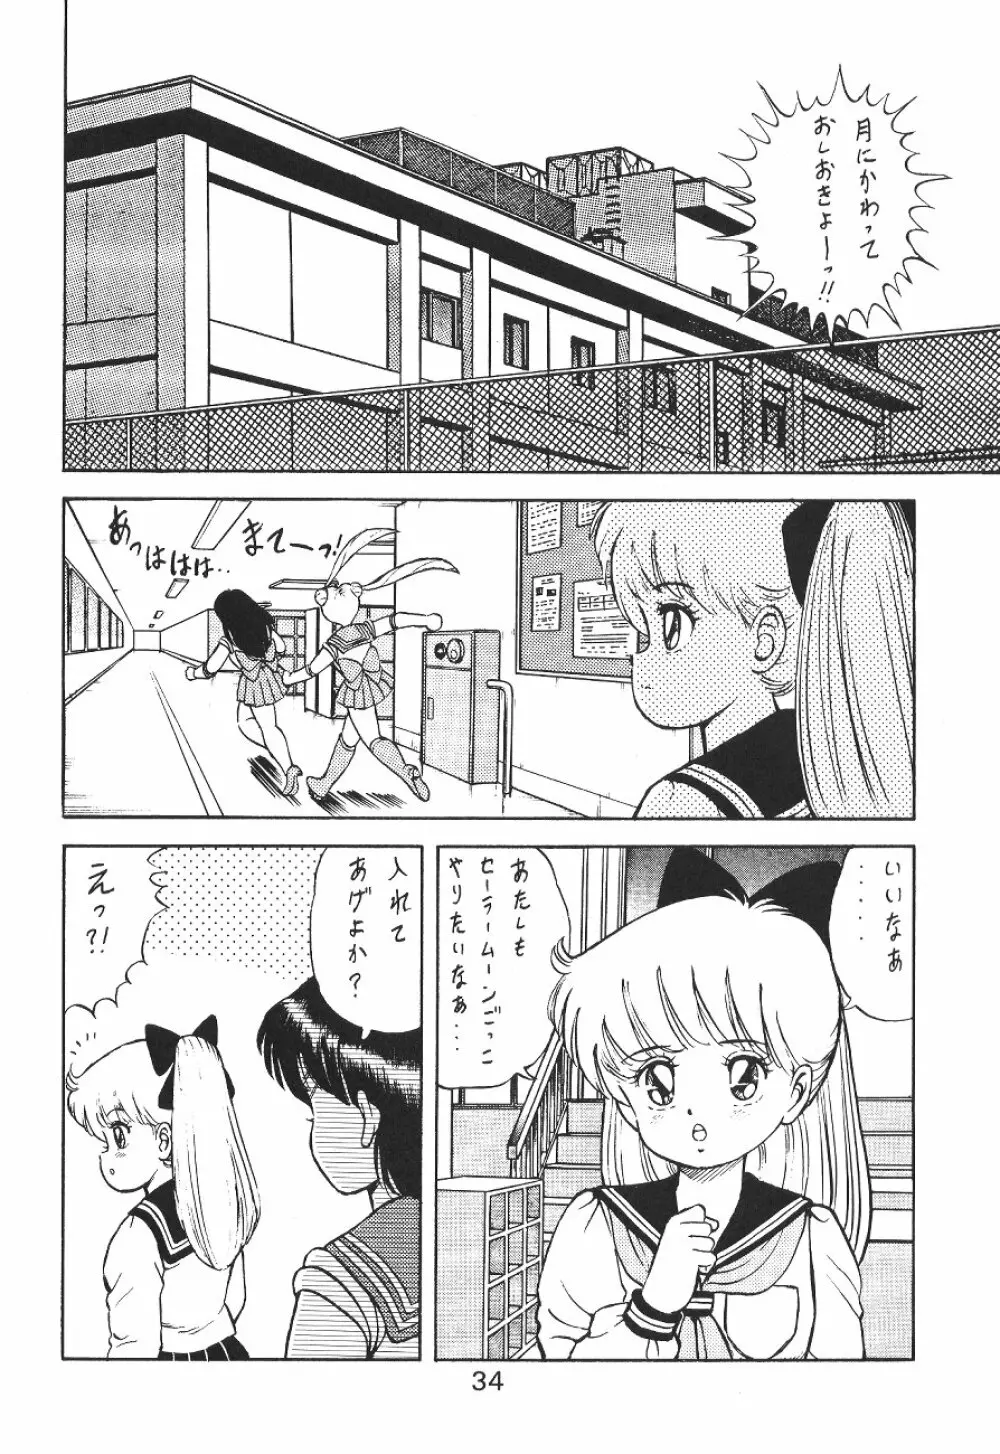 KATZE 7 上巻 - page34